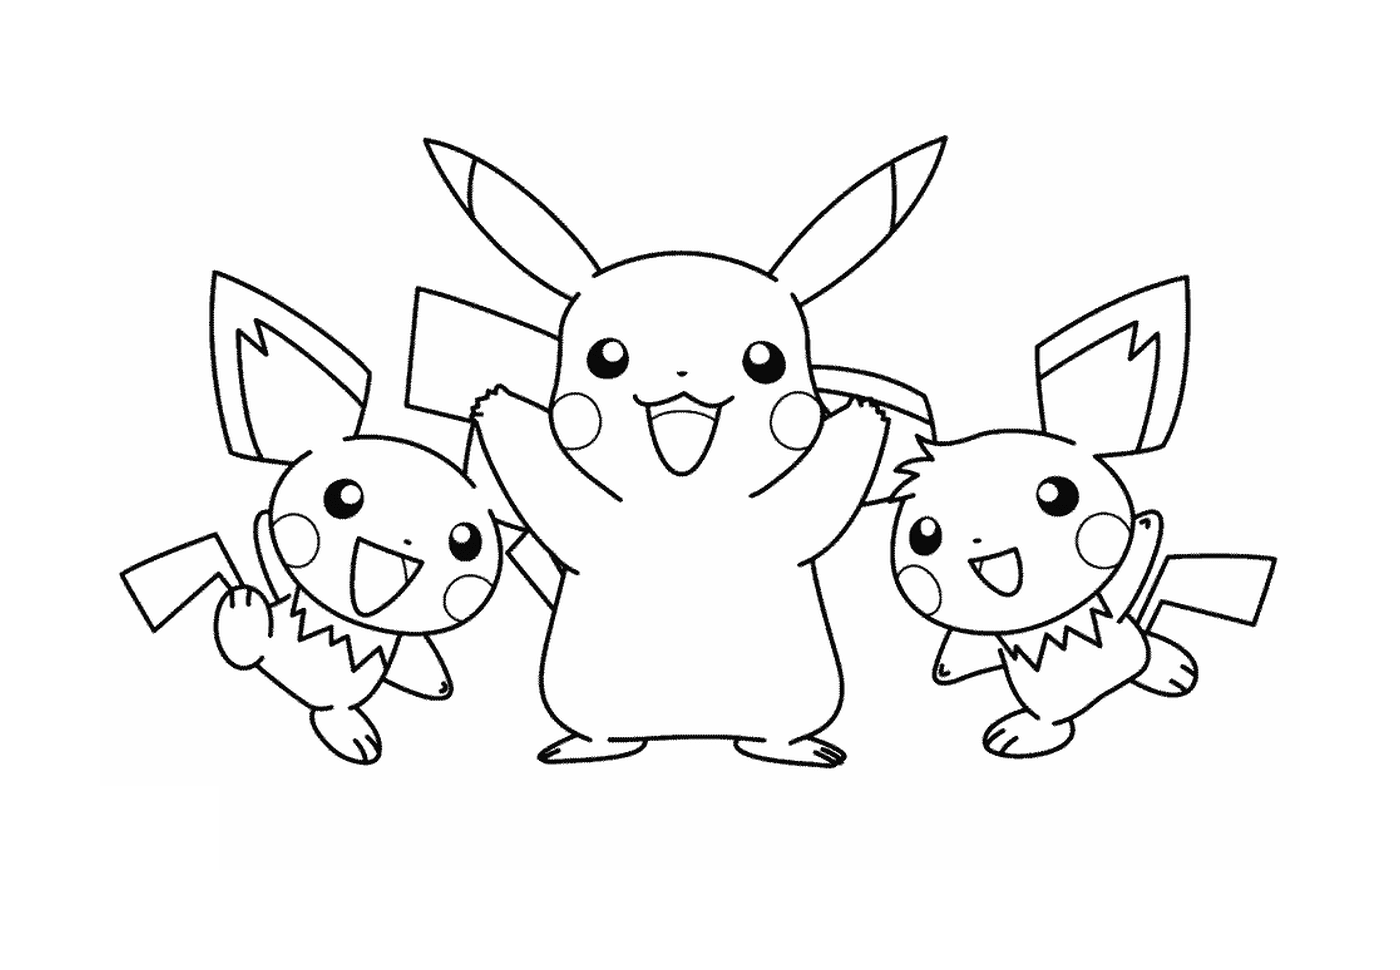  Três personagens Pikachu juntos 